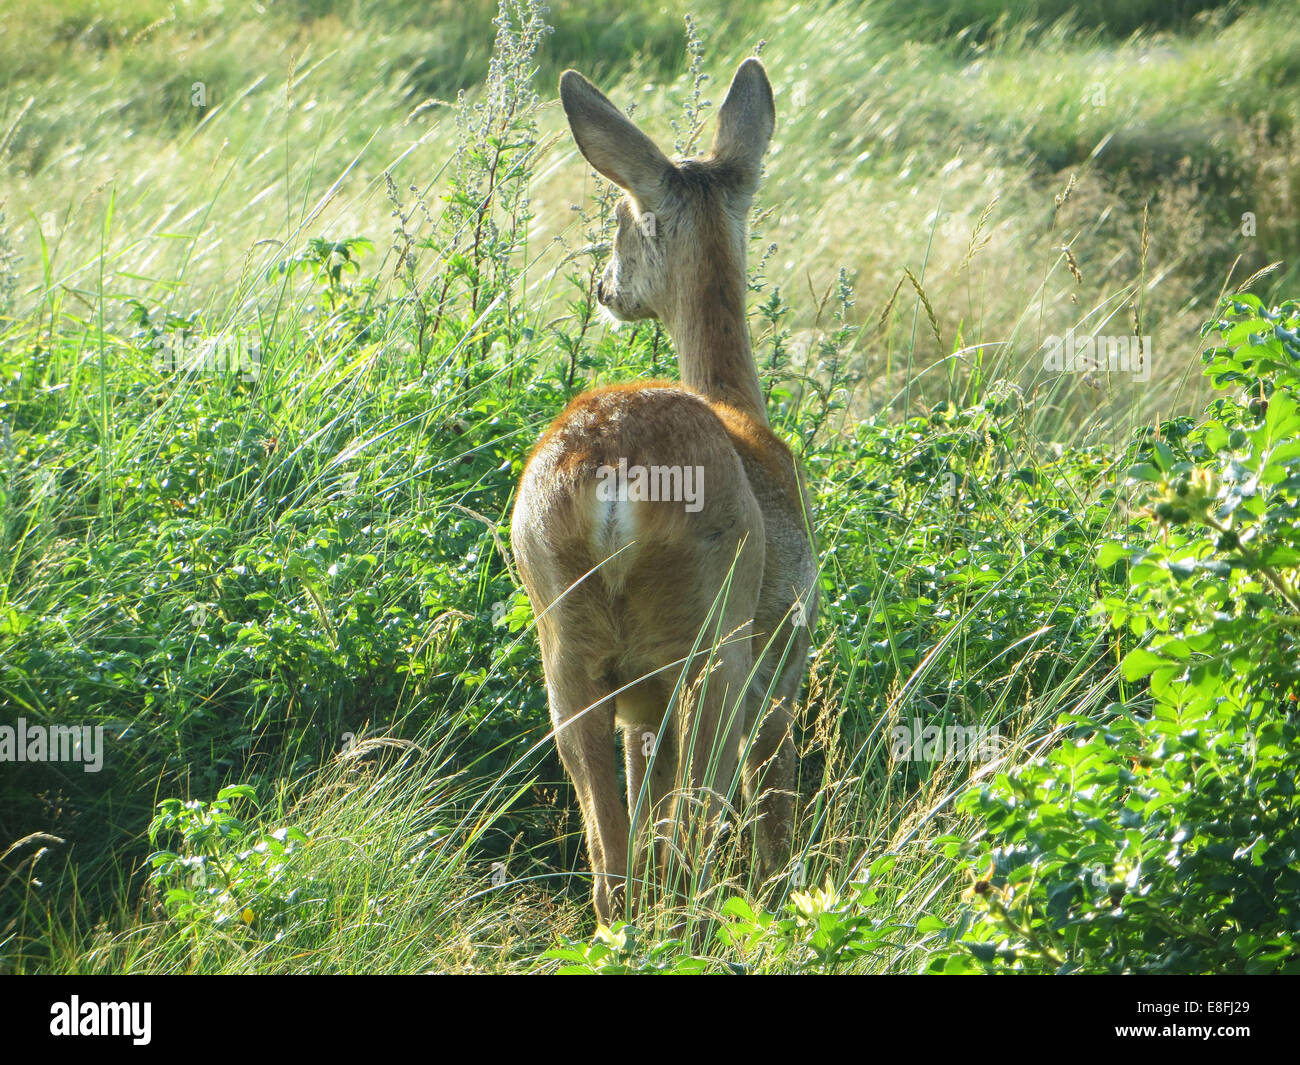 deer rear